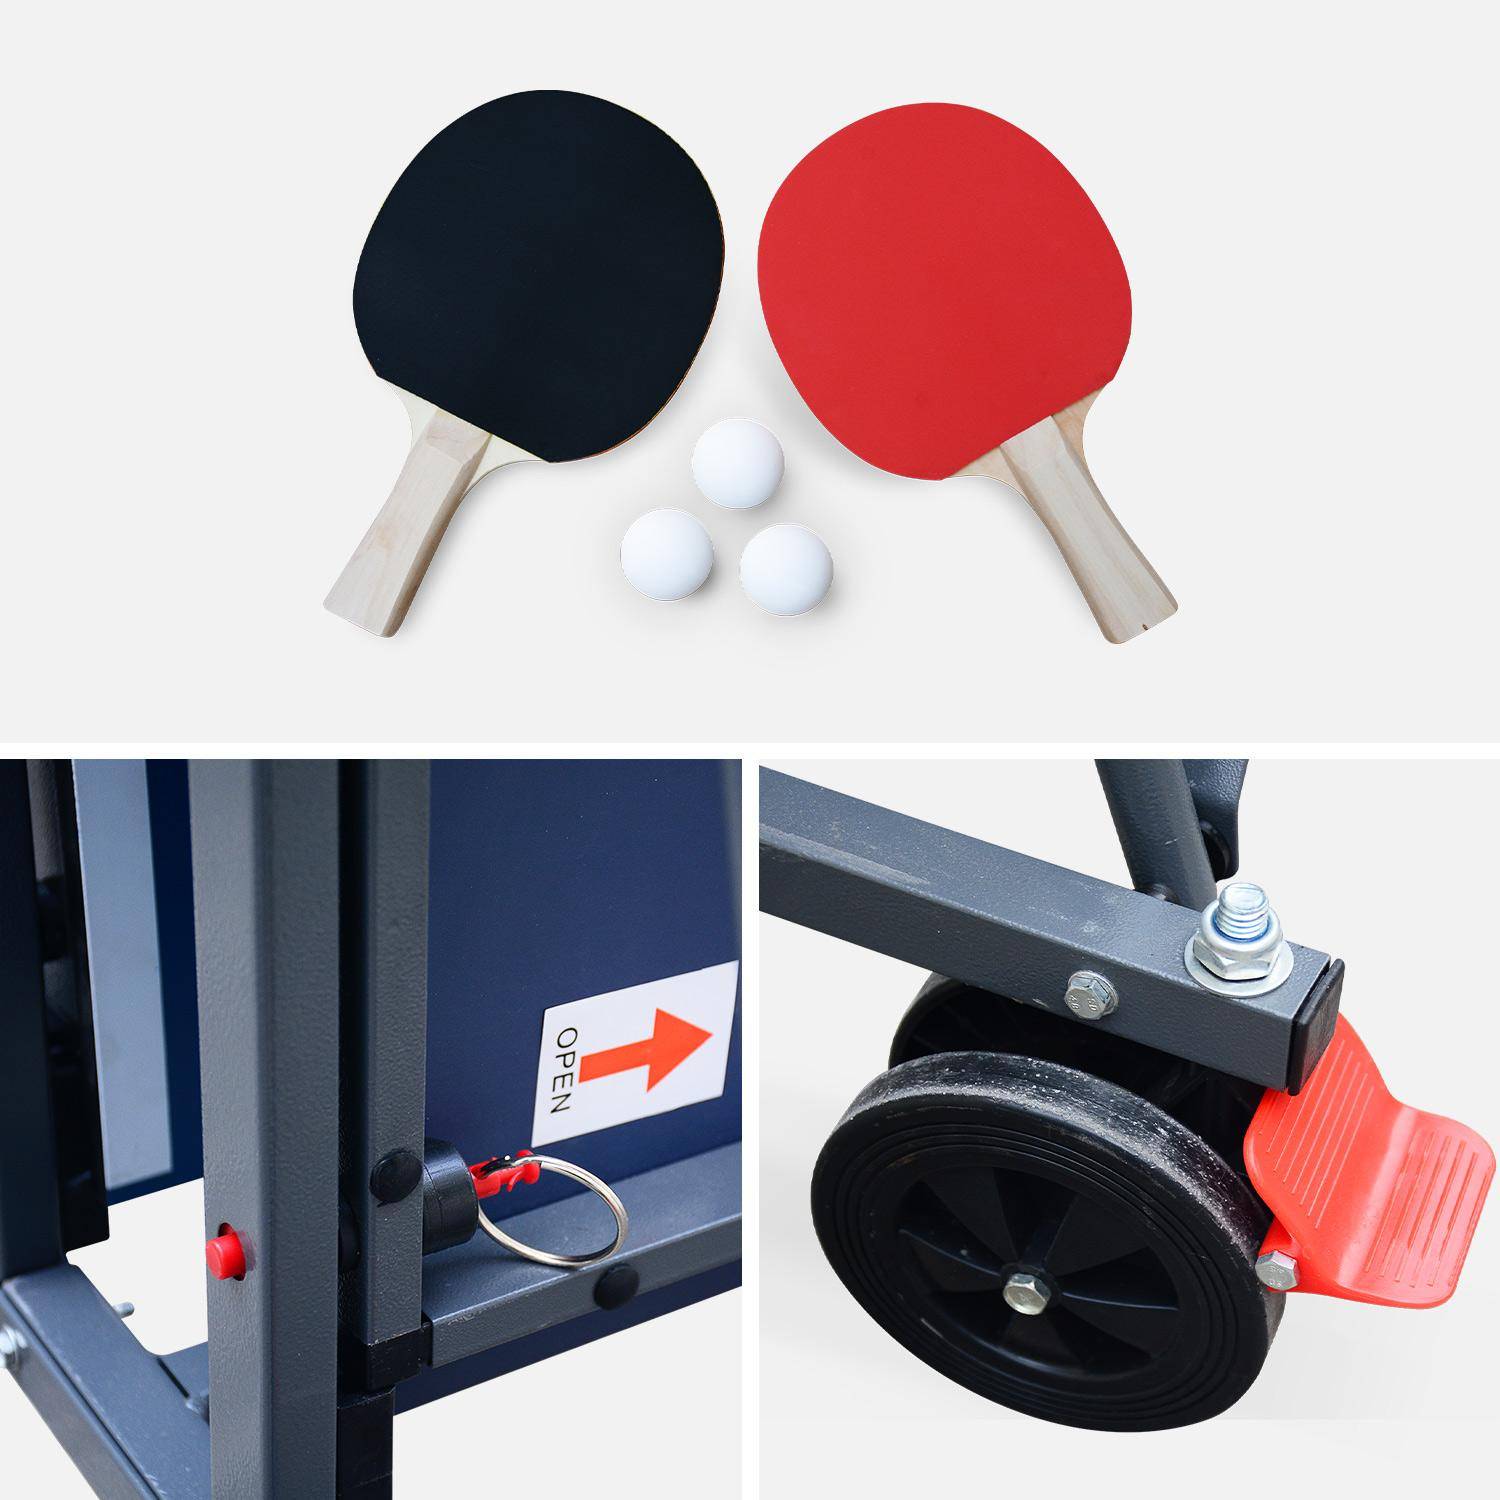 Table de ping pong INDOOR bleue - table pliable avec 2 raquettes et 3 balles, pour utilisation intérieure, sport tennis de table Photo5